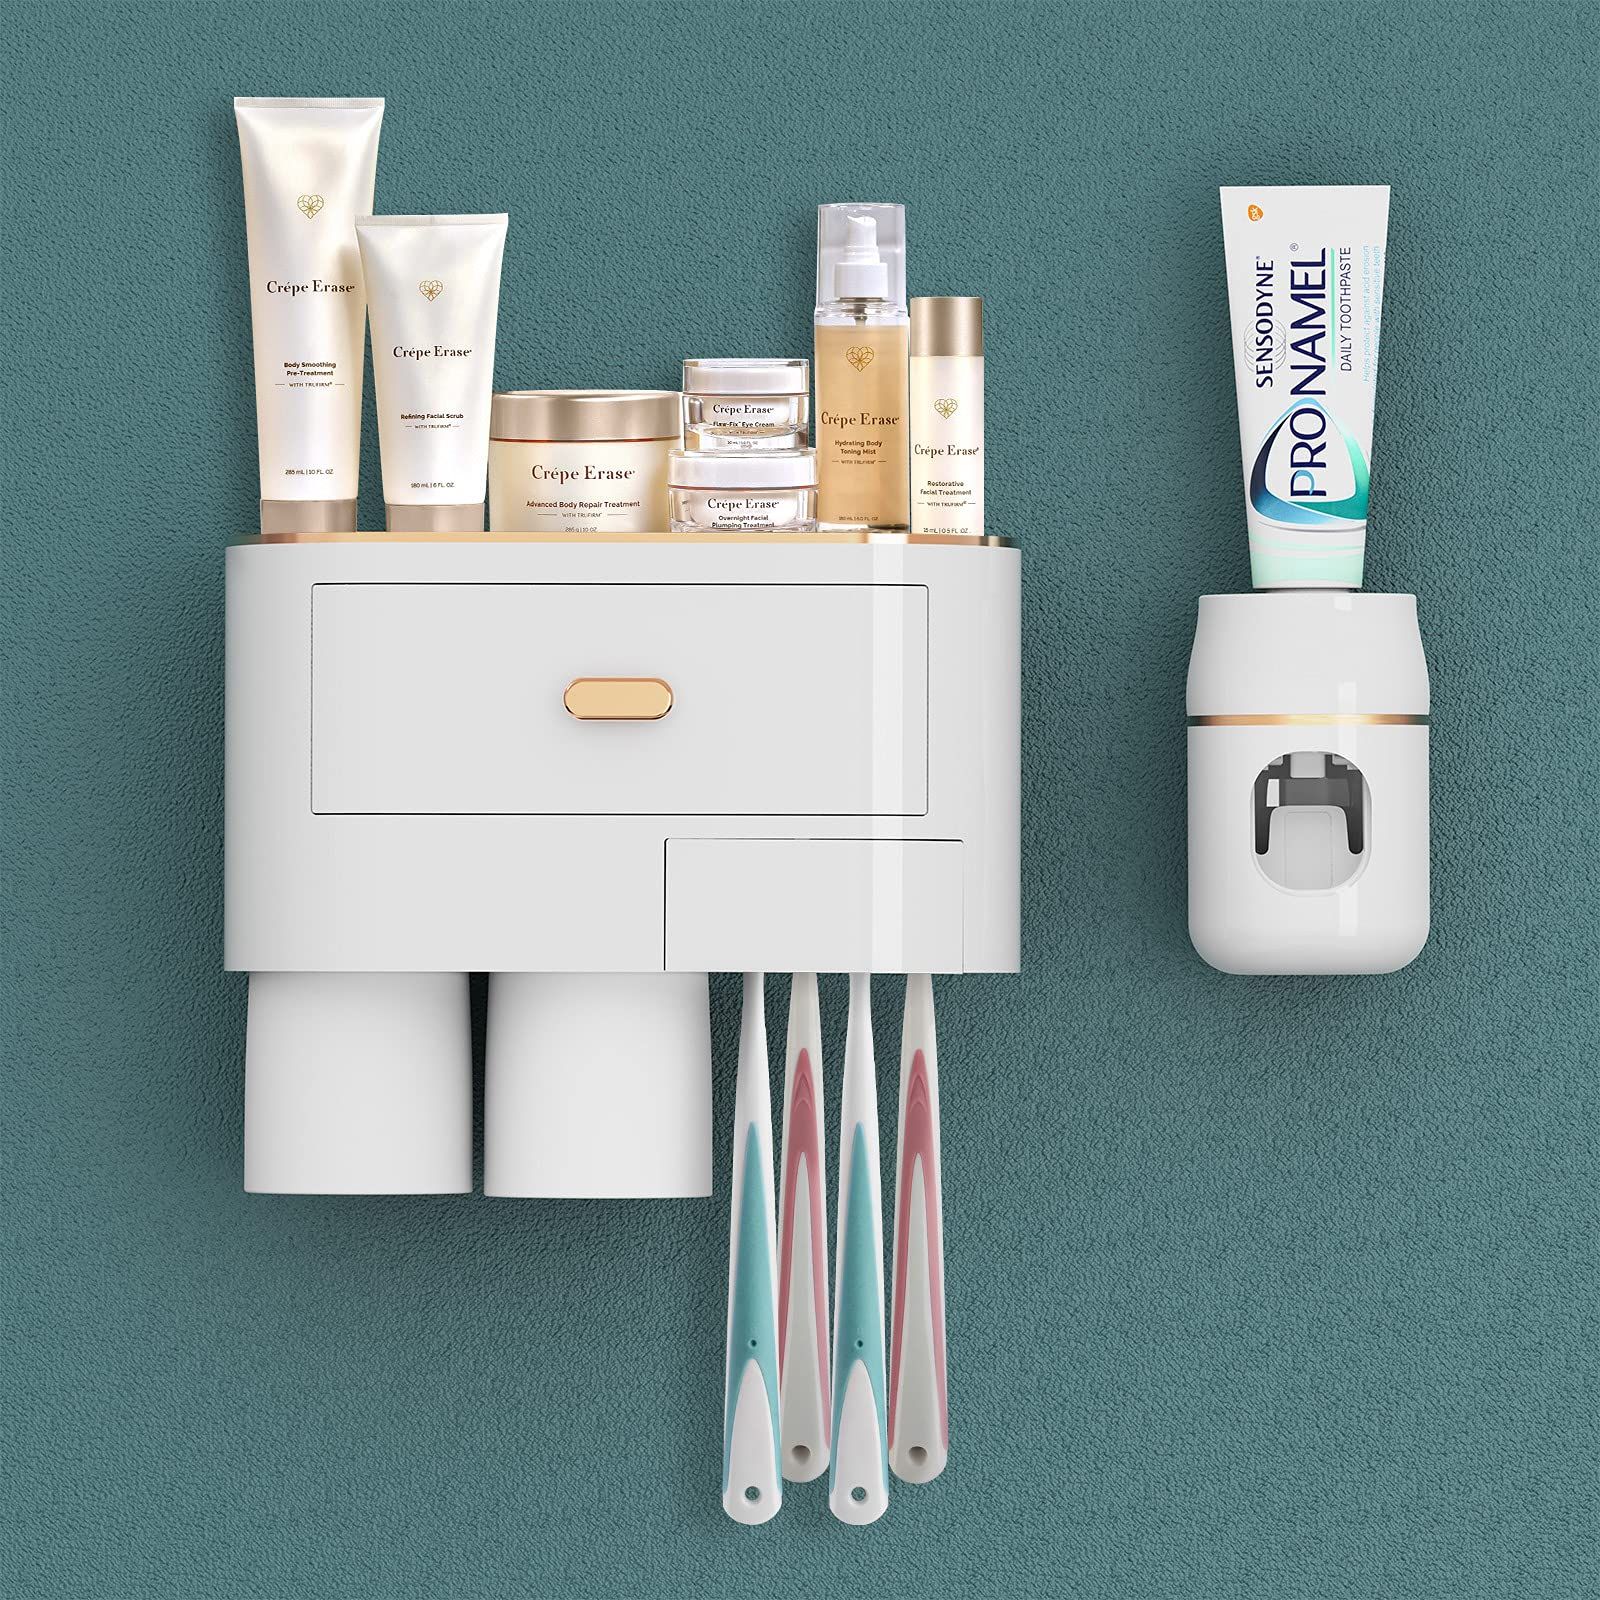 ABS製の歯ブラシホルダー、穴を開ける必要がなく、壁掛け、バスルームのスペースを節約できます。自動歯磨き粉ディスペンサーは非接触で操作が簡単で、強度に応じて歯磨き粉の押し出しの長さを簡単に制御できます。口紅やその他の小さなアクセサリーを保管するための引き出しと、歯磨き粉、カミソリ、洗顔剤、化粧品用の棚の平らな表面を備えた逆磁気歯ブラシカップのデザイン。壁掛け歯ブラシホルダーの寸法: 23cm x 19cm x 11.3cmパッケージ内容：歯ブラシホルダー壁掛け×1、歯磨き粉ディスペンサー×1、歯ブラシカップ×2